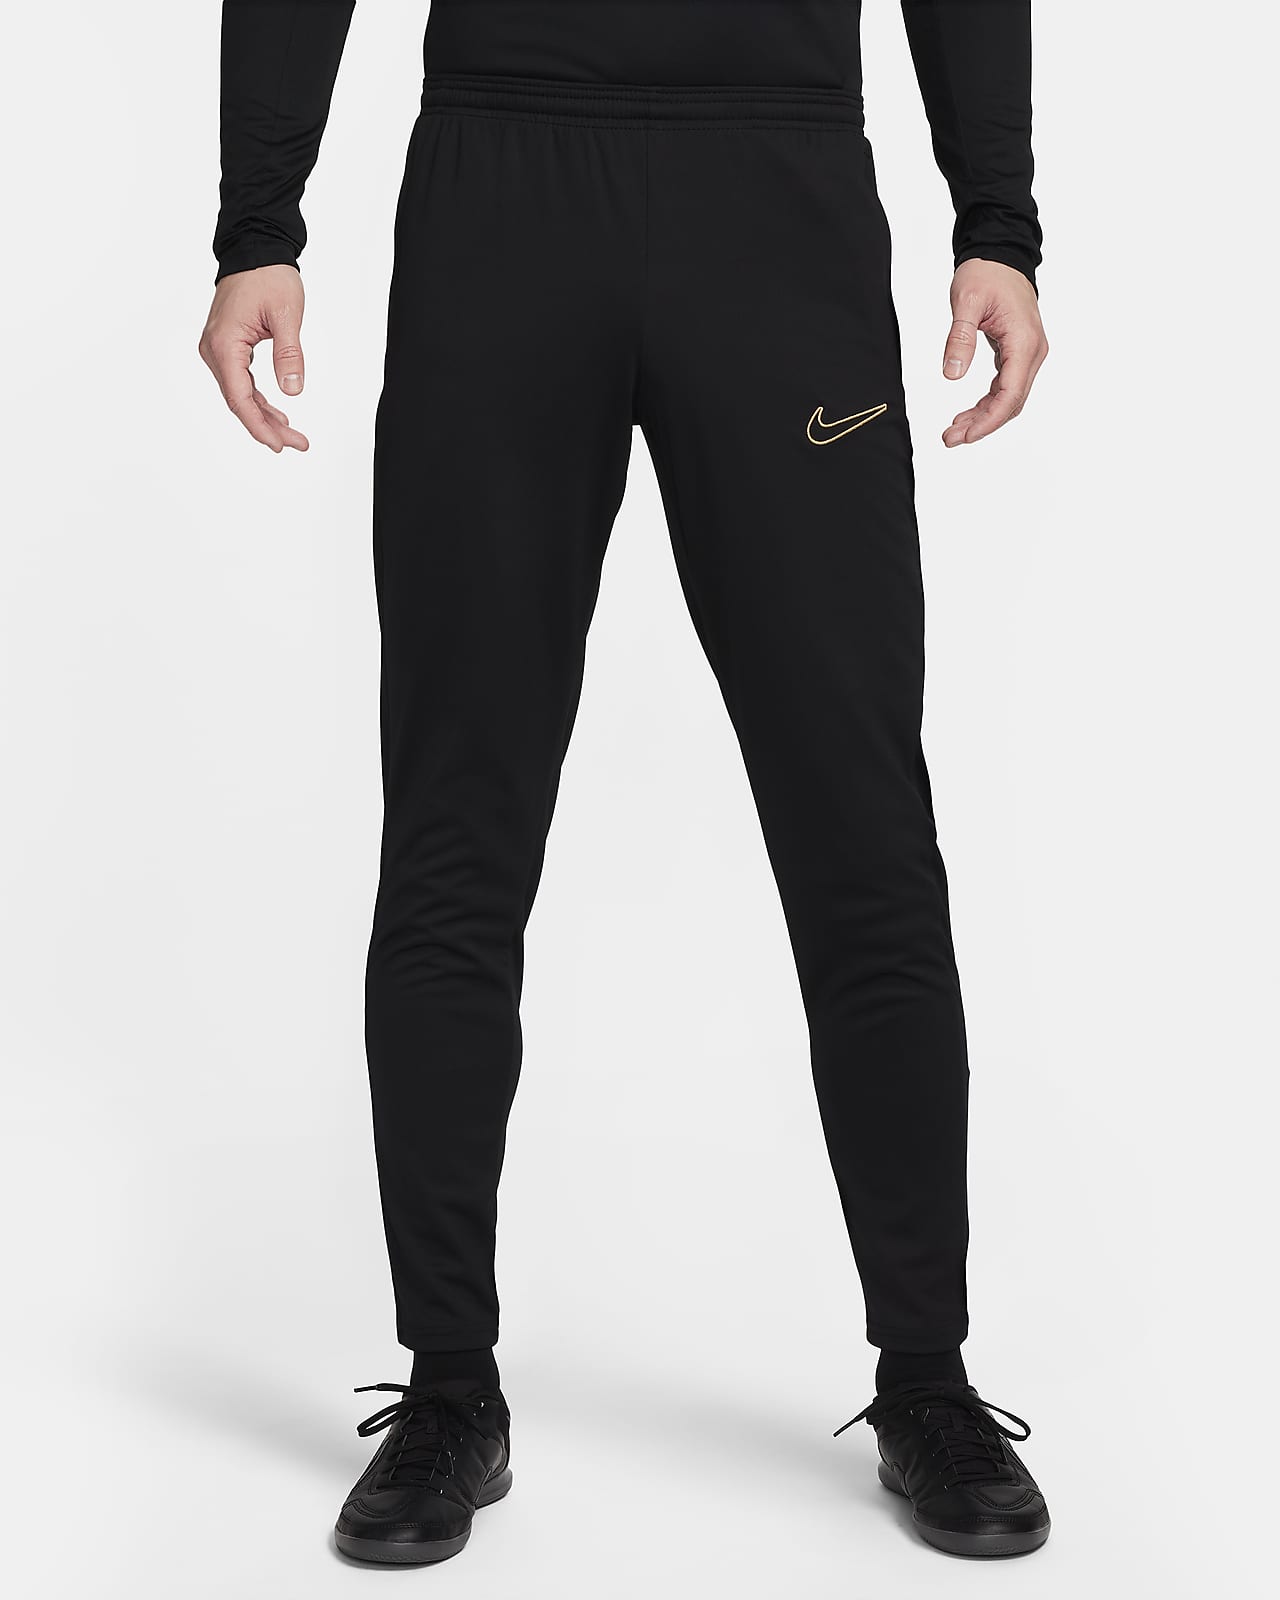 Pánské fotbalové kalhoty Nike Dri-FIT Academy